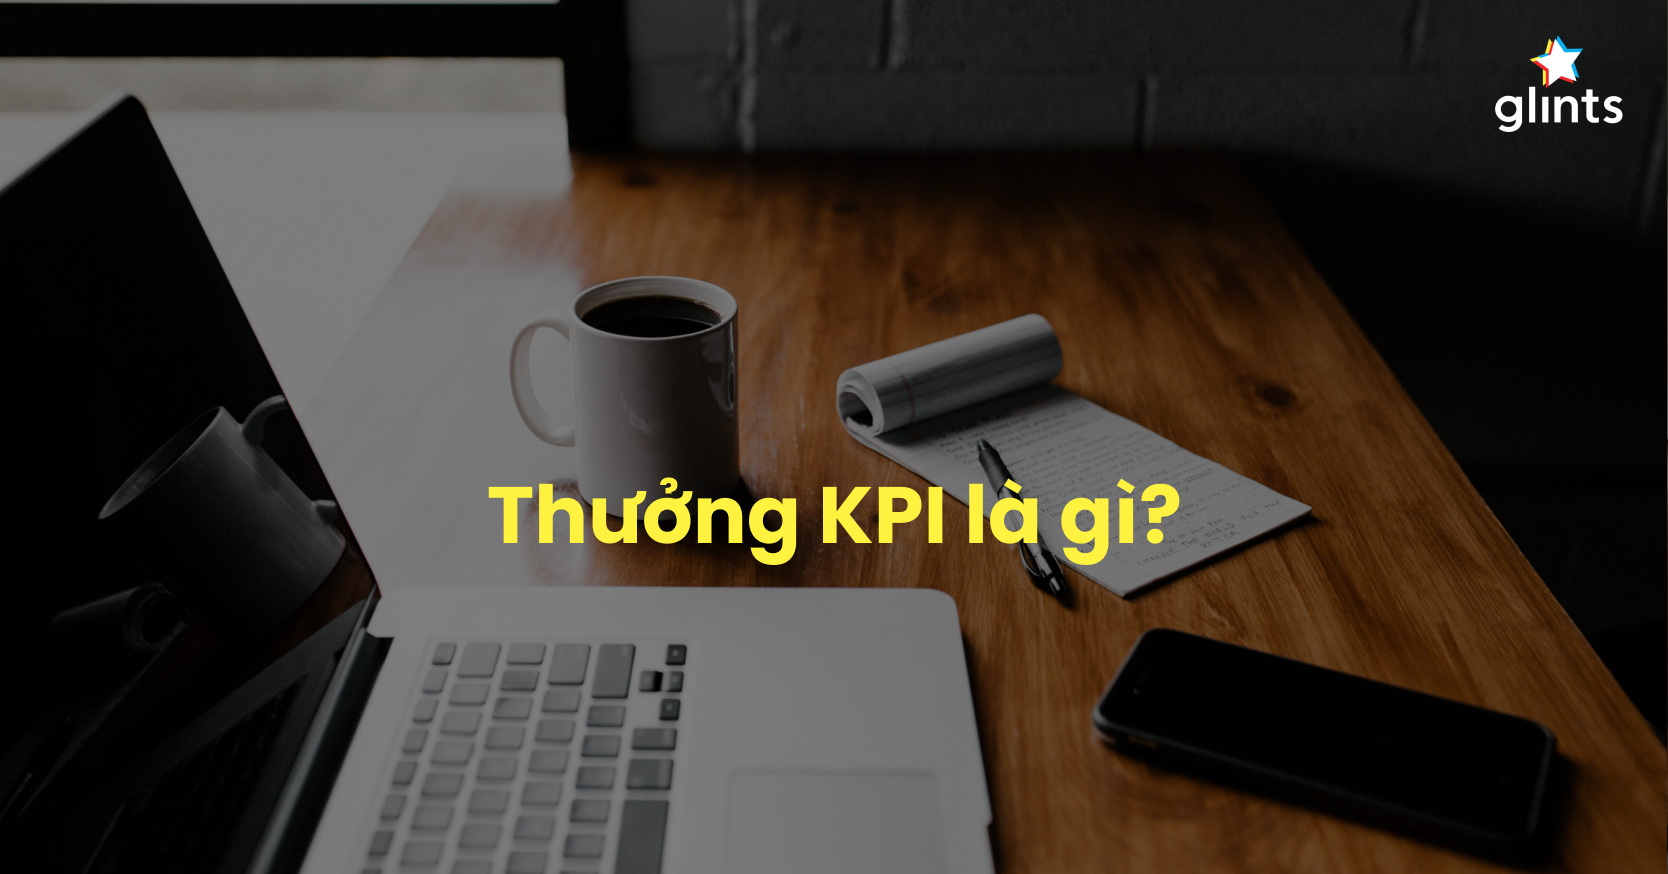 Thưởng KPI là gì?